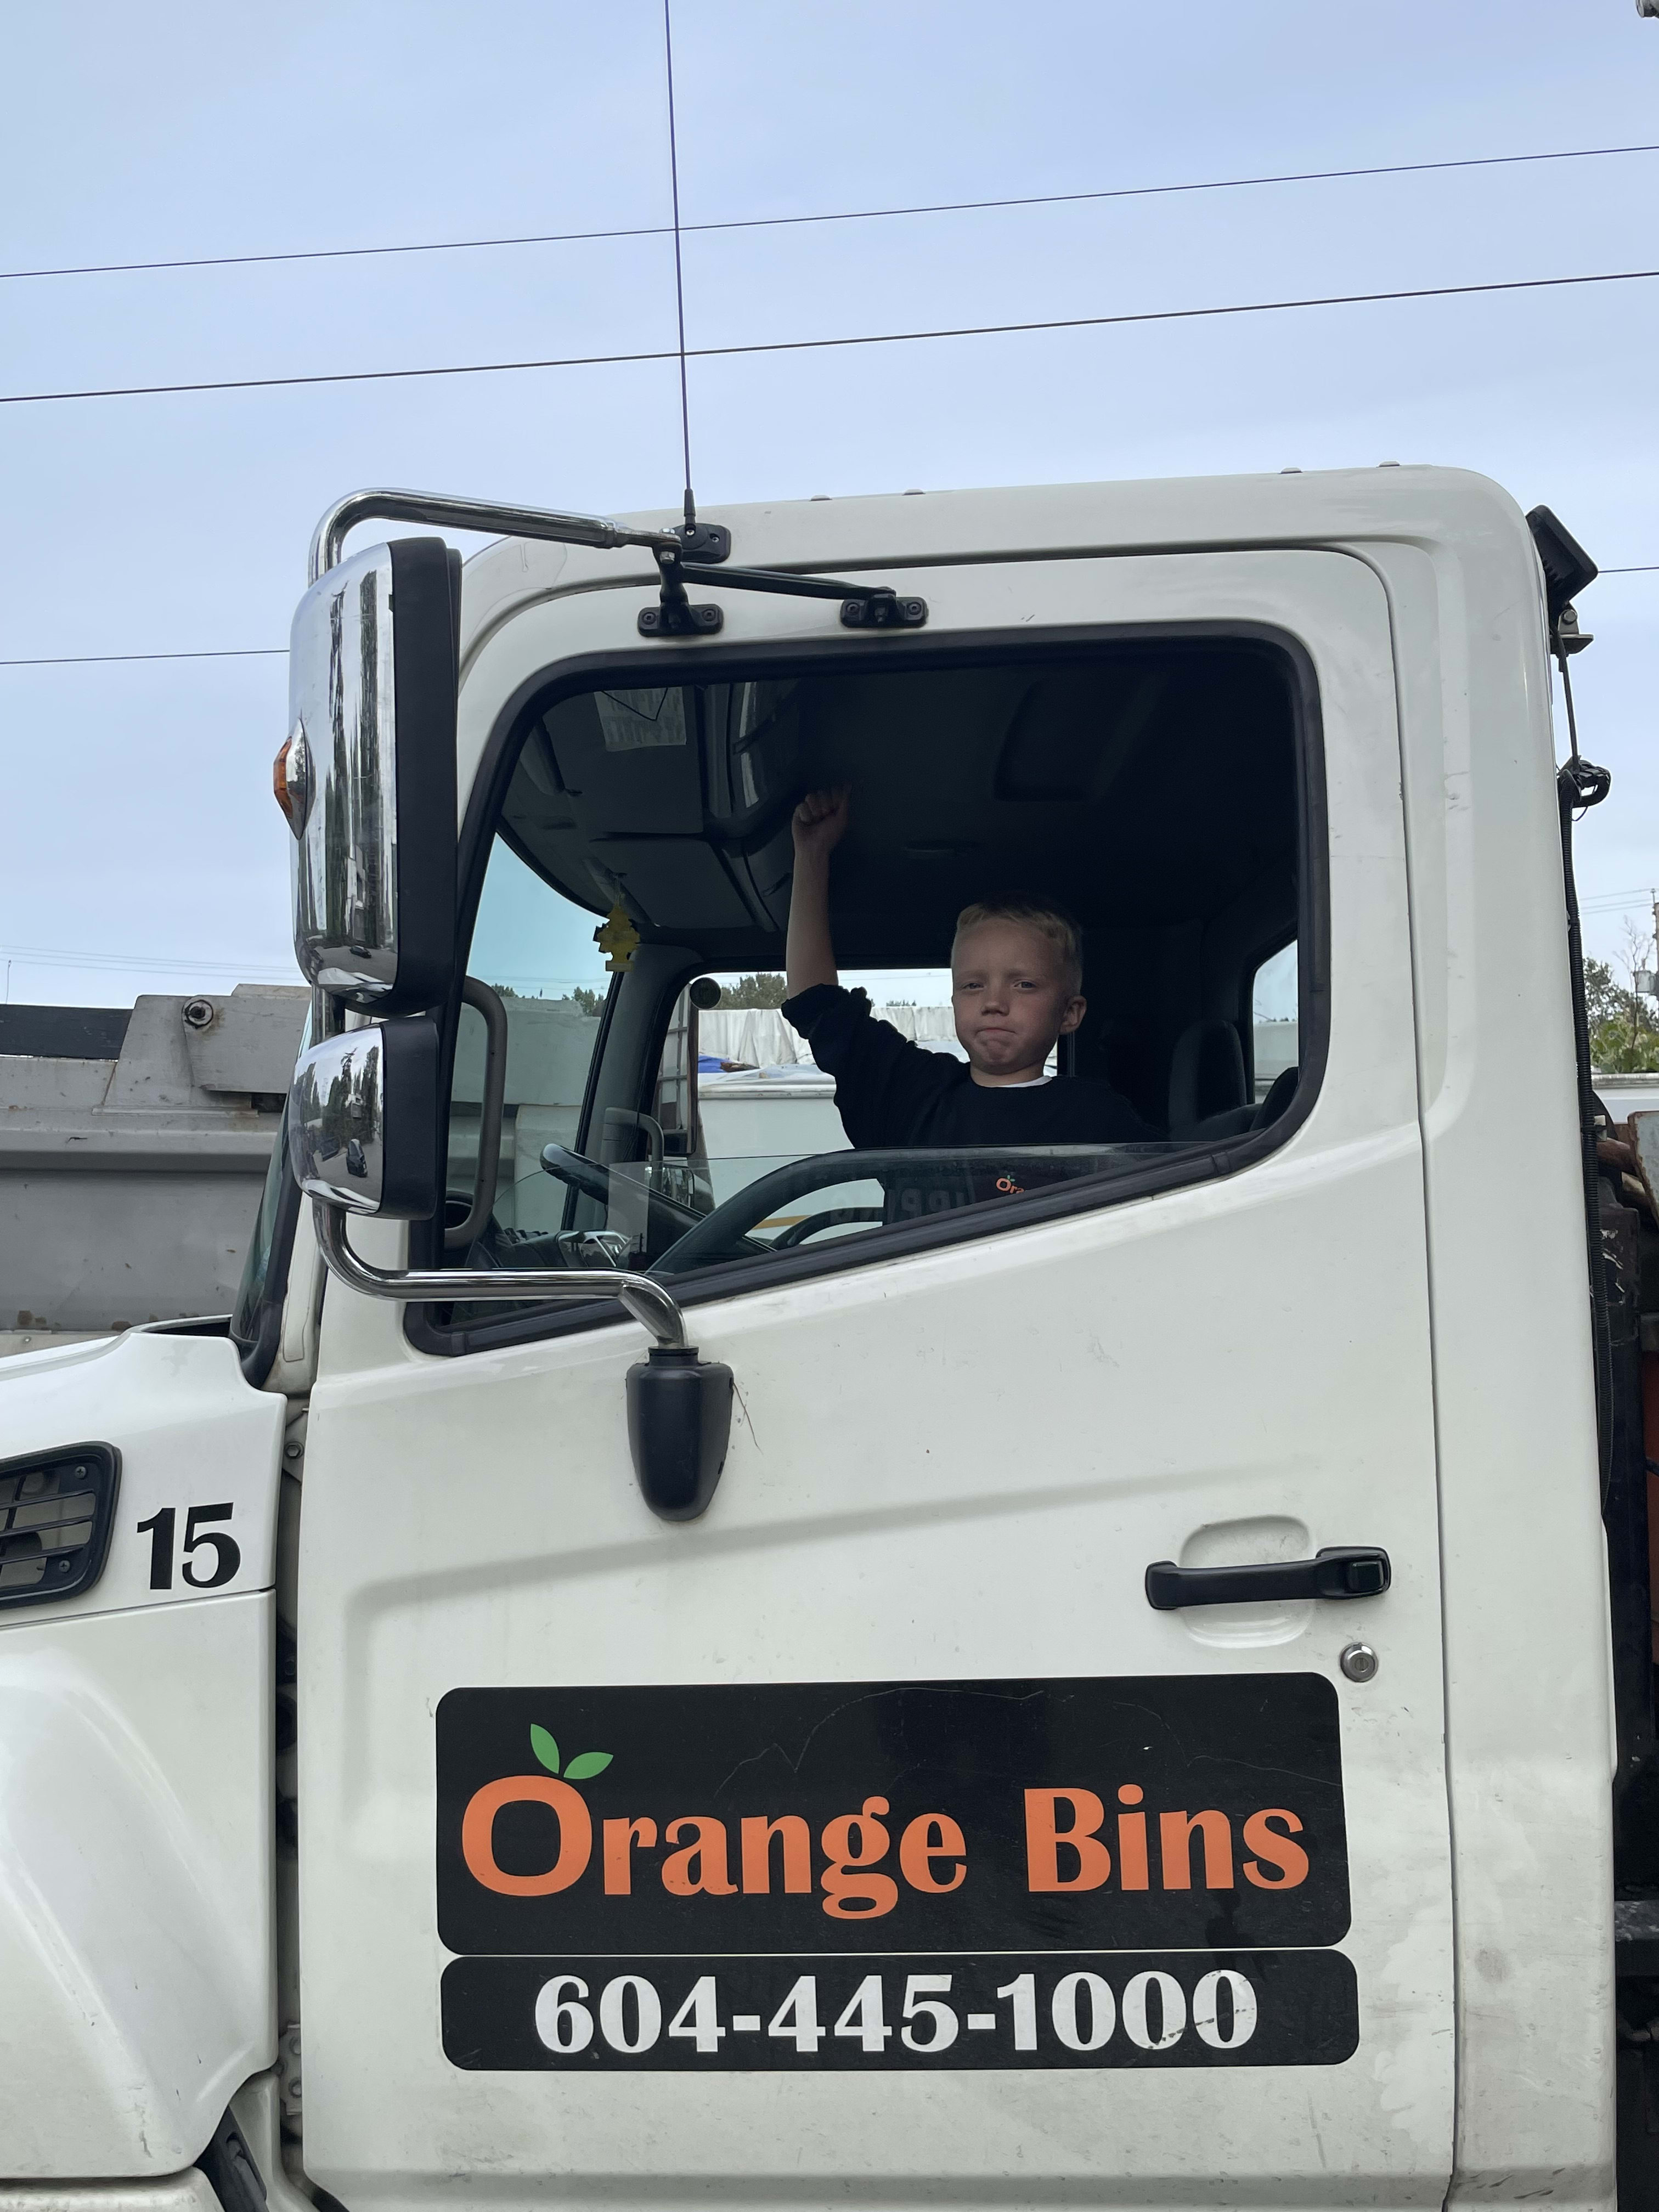 dumpster bin rental truck from Orange Bins